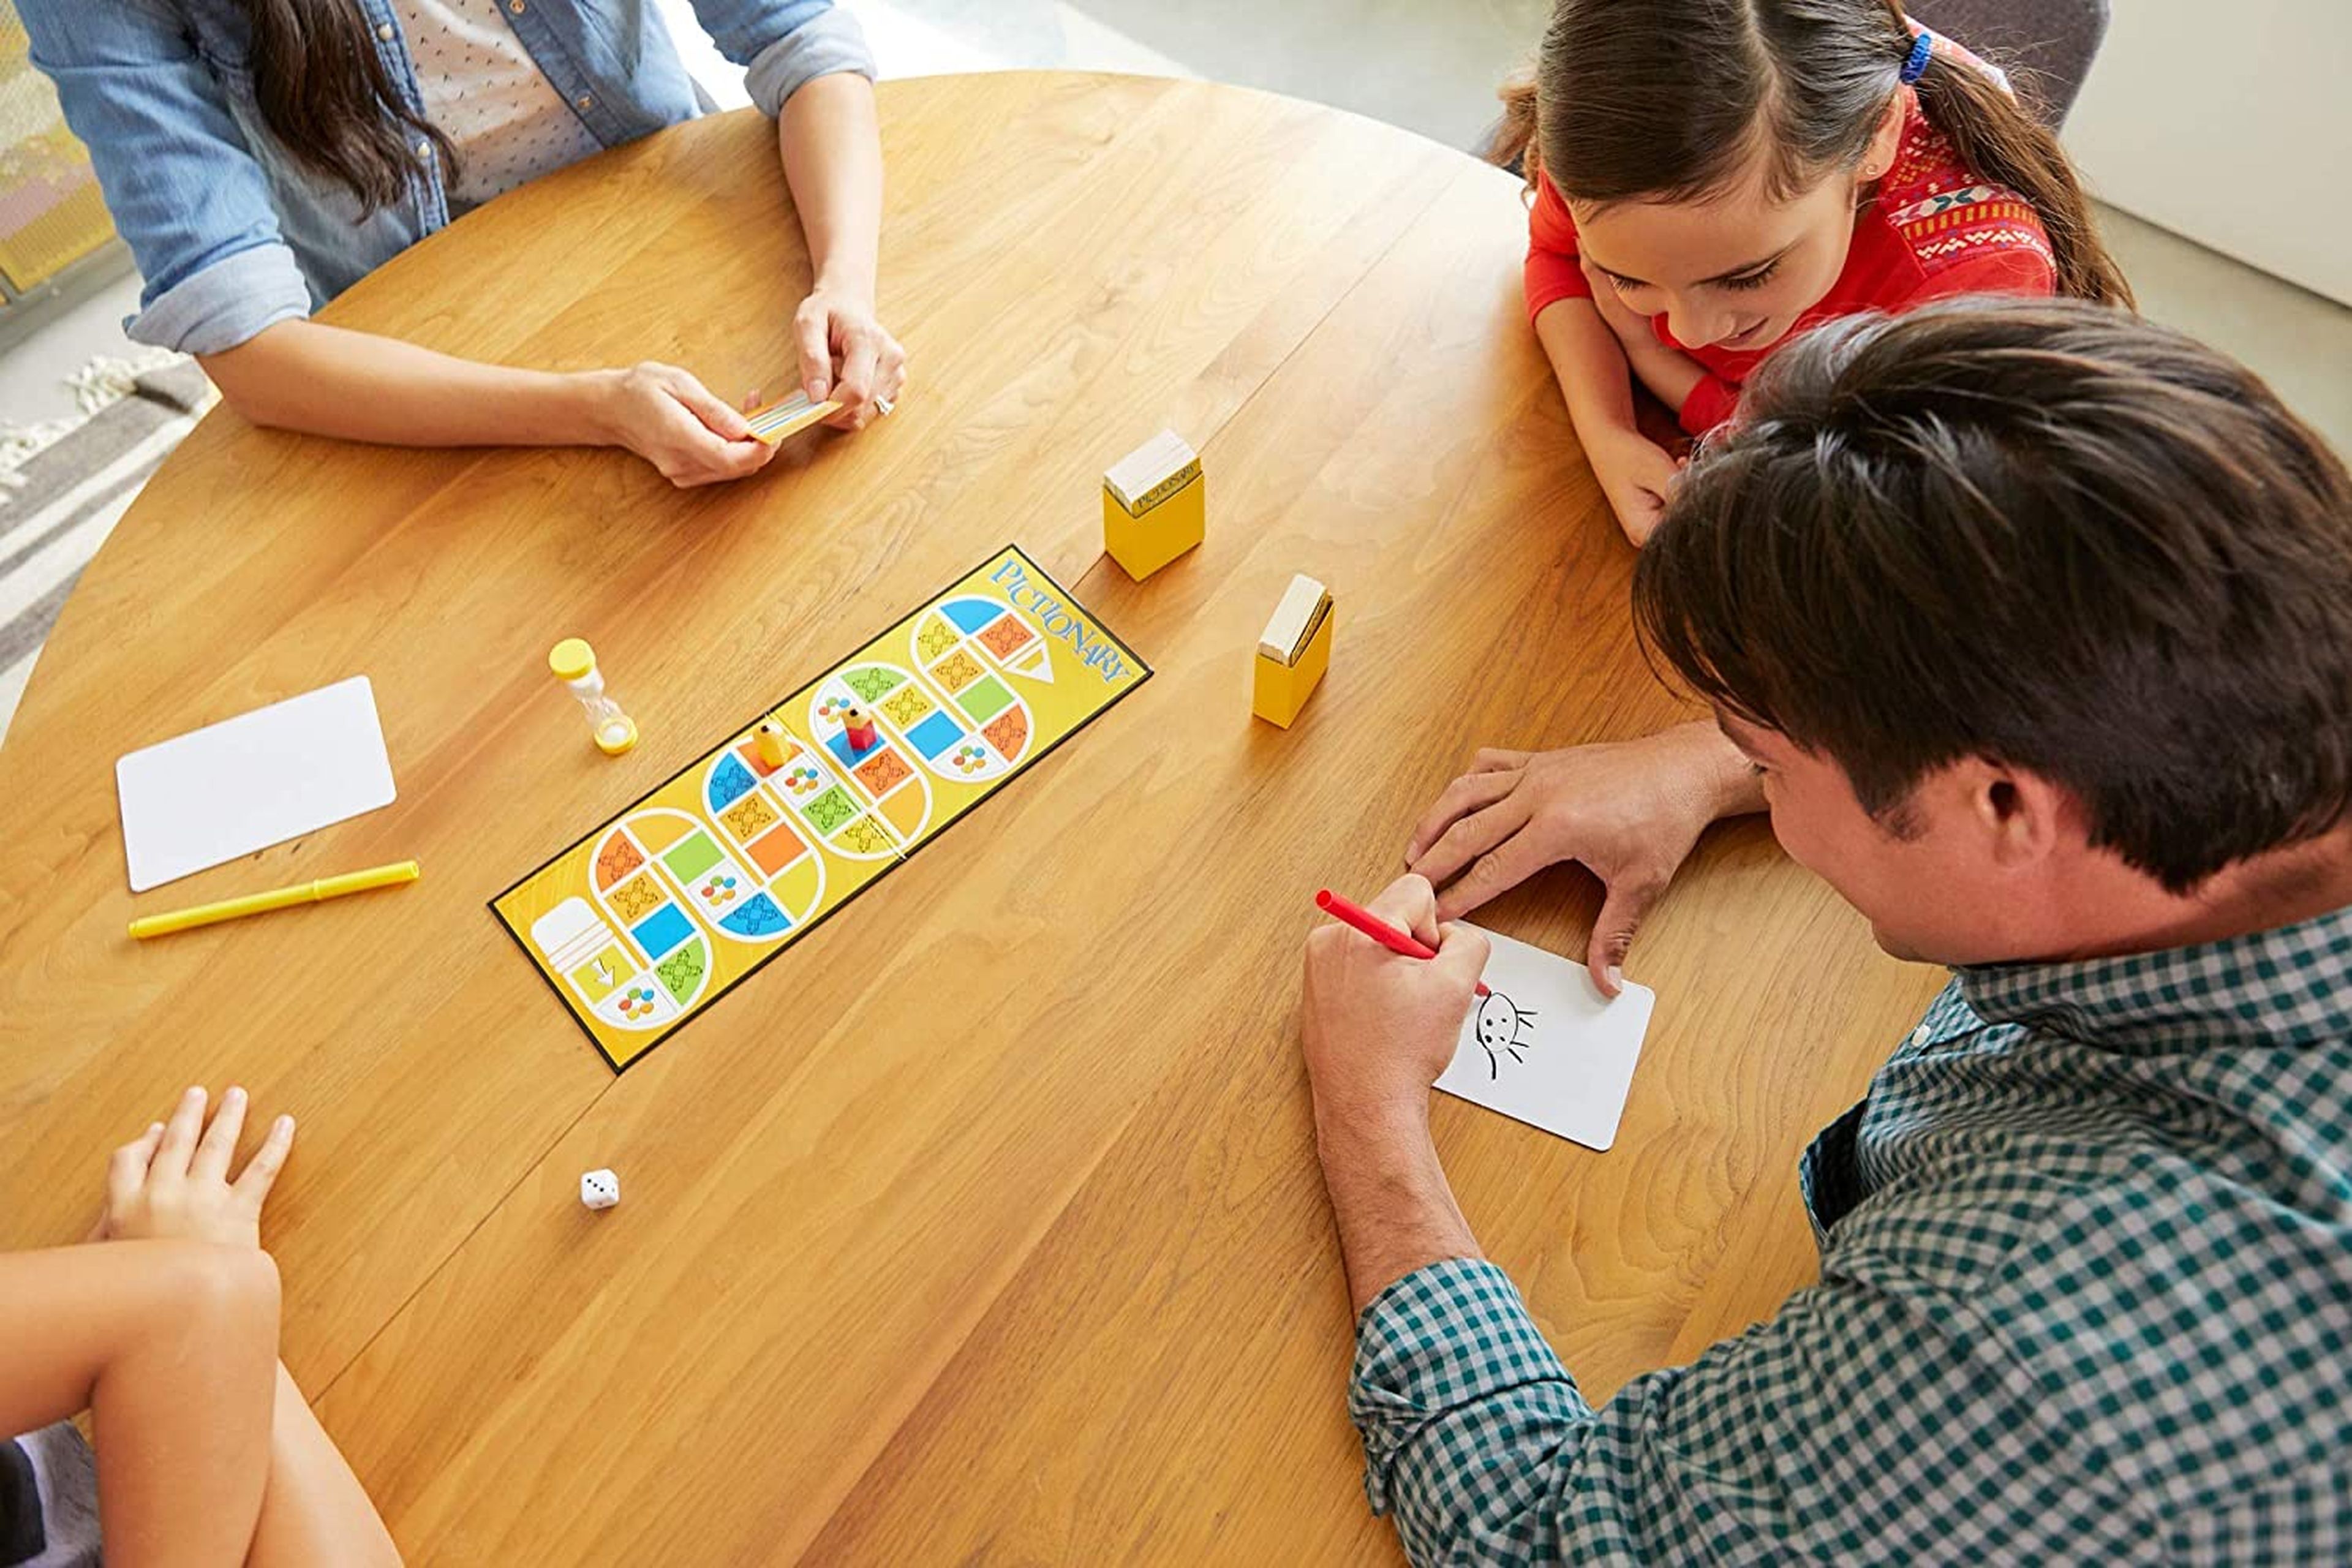 12 juegos de mesa que puedes hacer por ti mismo en casa | Computer Hoy